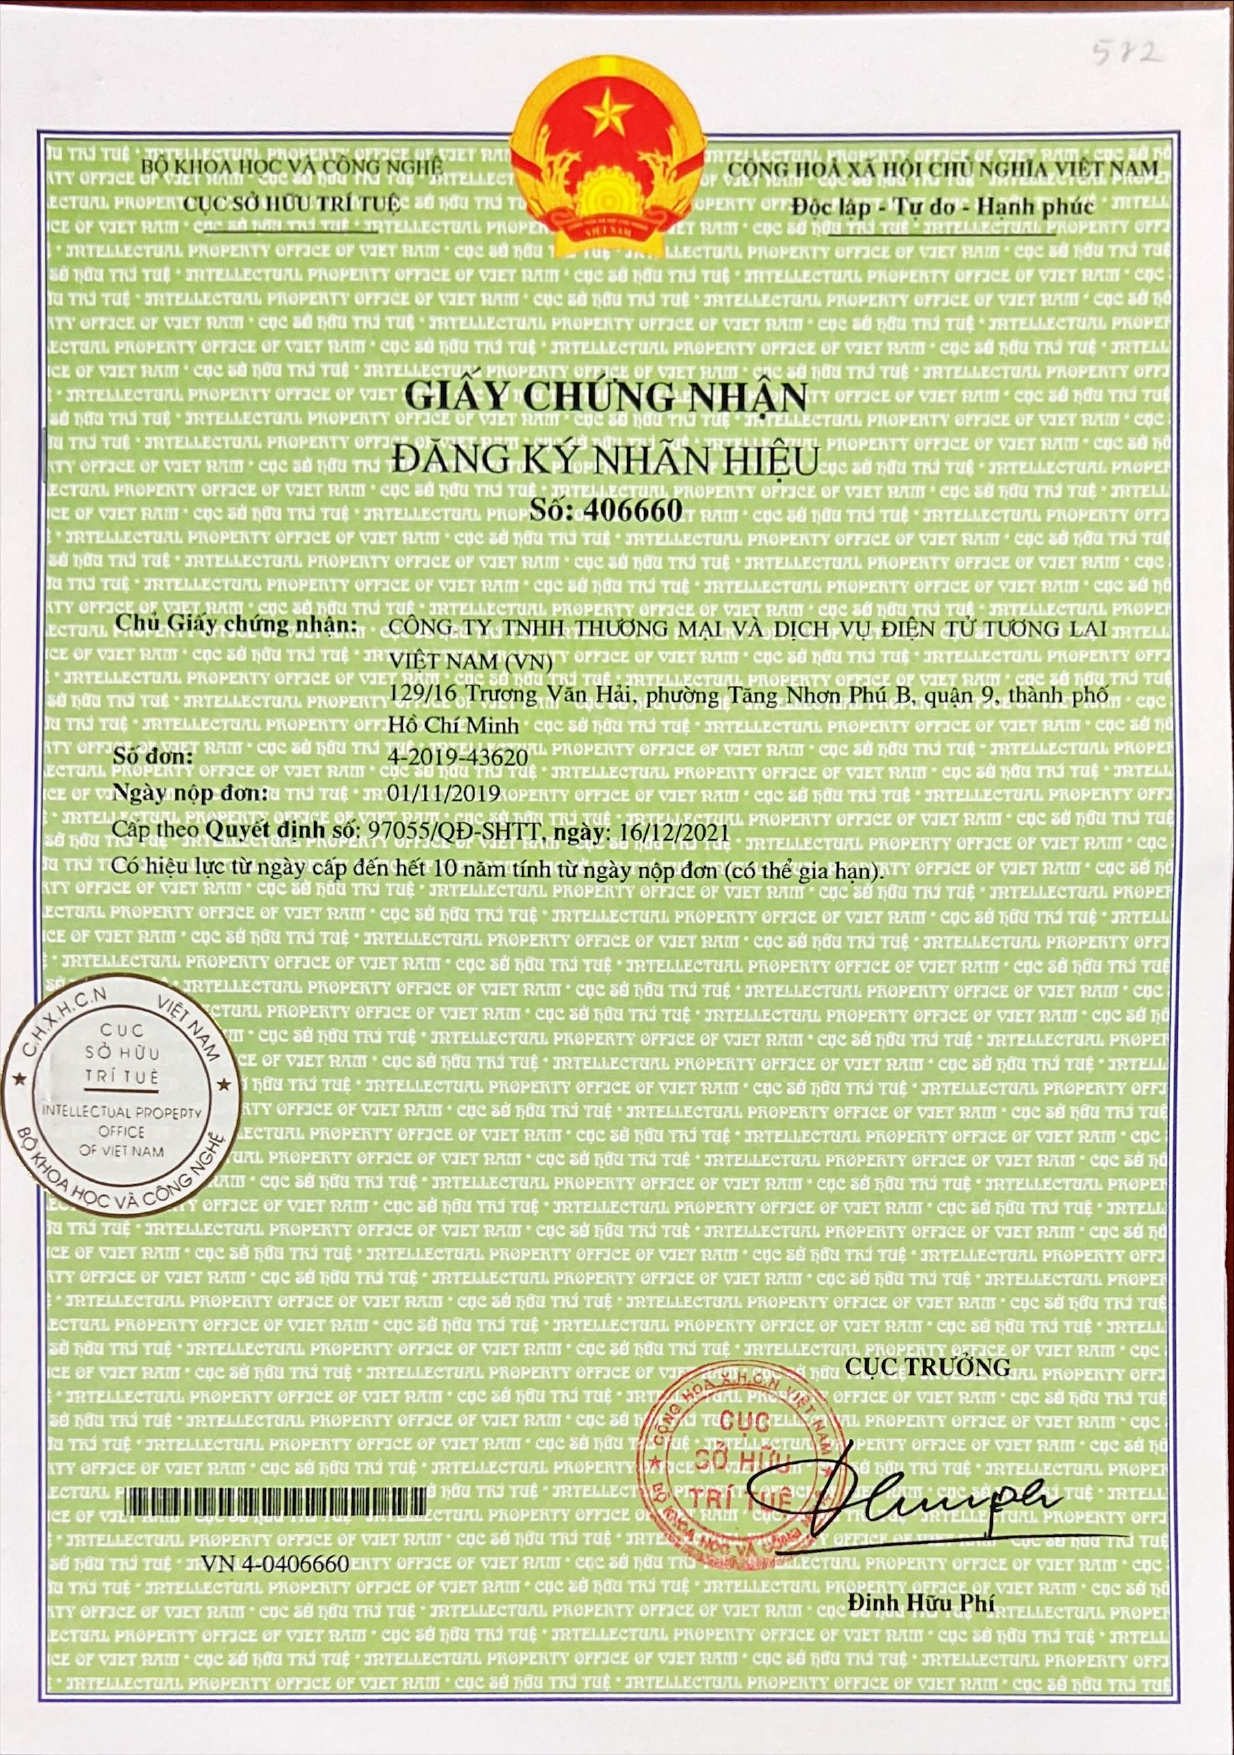 Công ty Giải Pháp Trí Việt gửi giấy chứng nhận đăng ký nhãn hiệu cho công ty THƯƠNG MẠI VÀ DỊCH VỤ ĐIỆN TỬ TƯƠNG LAI